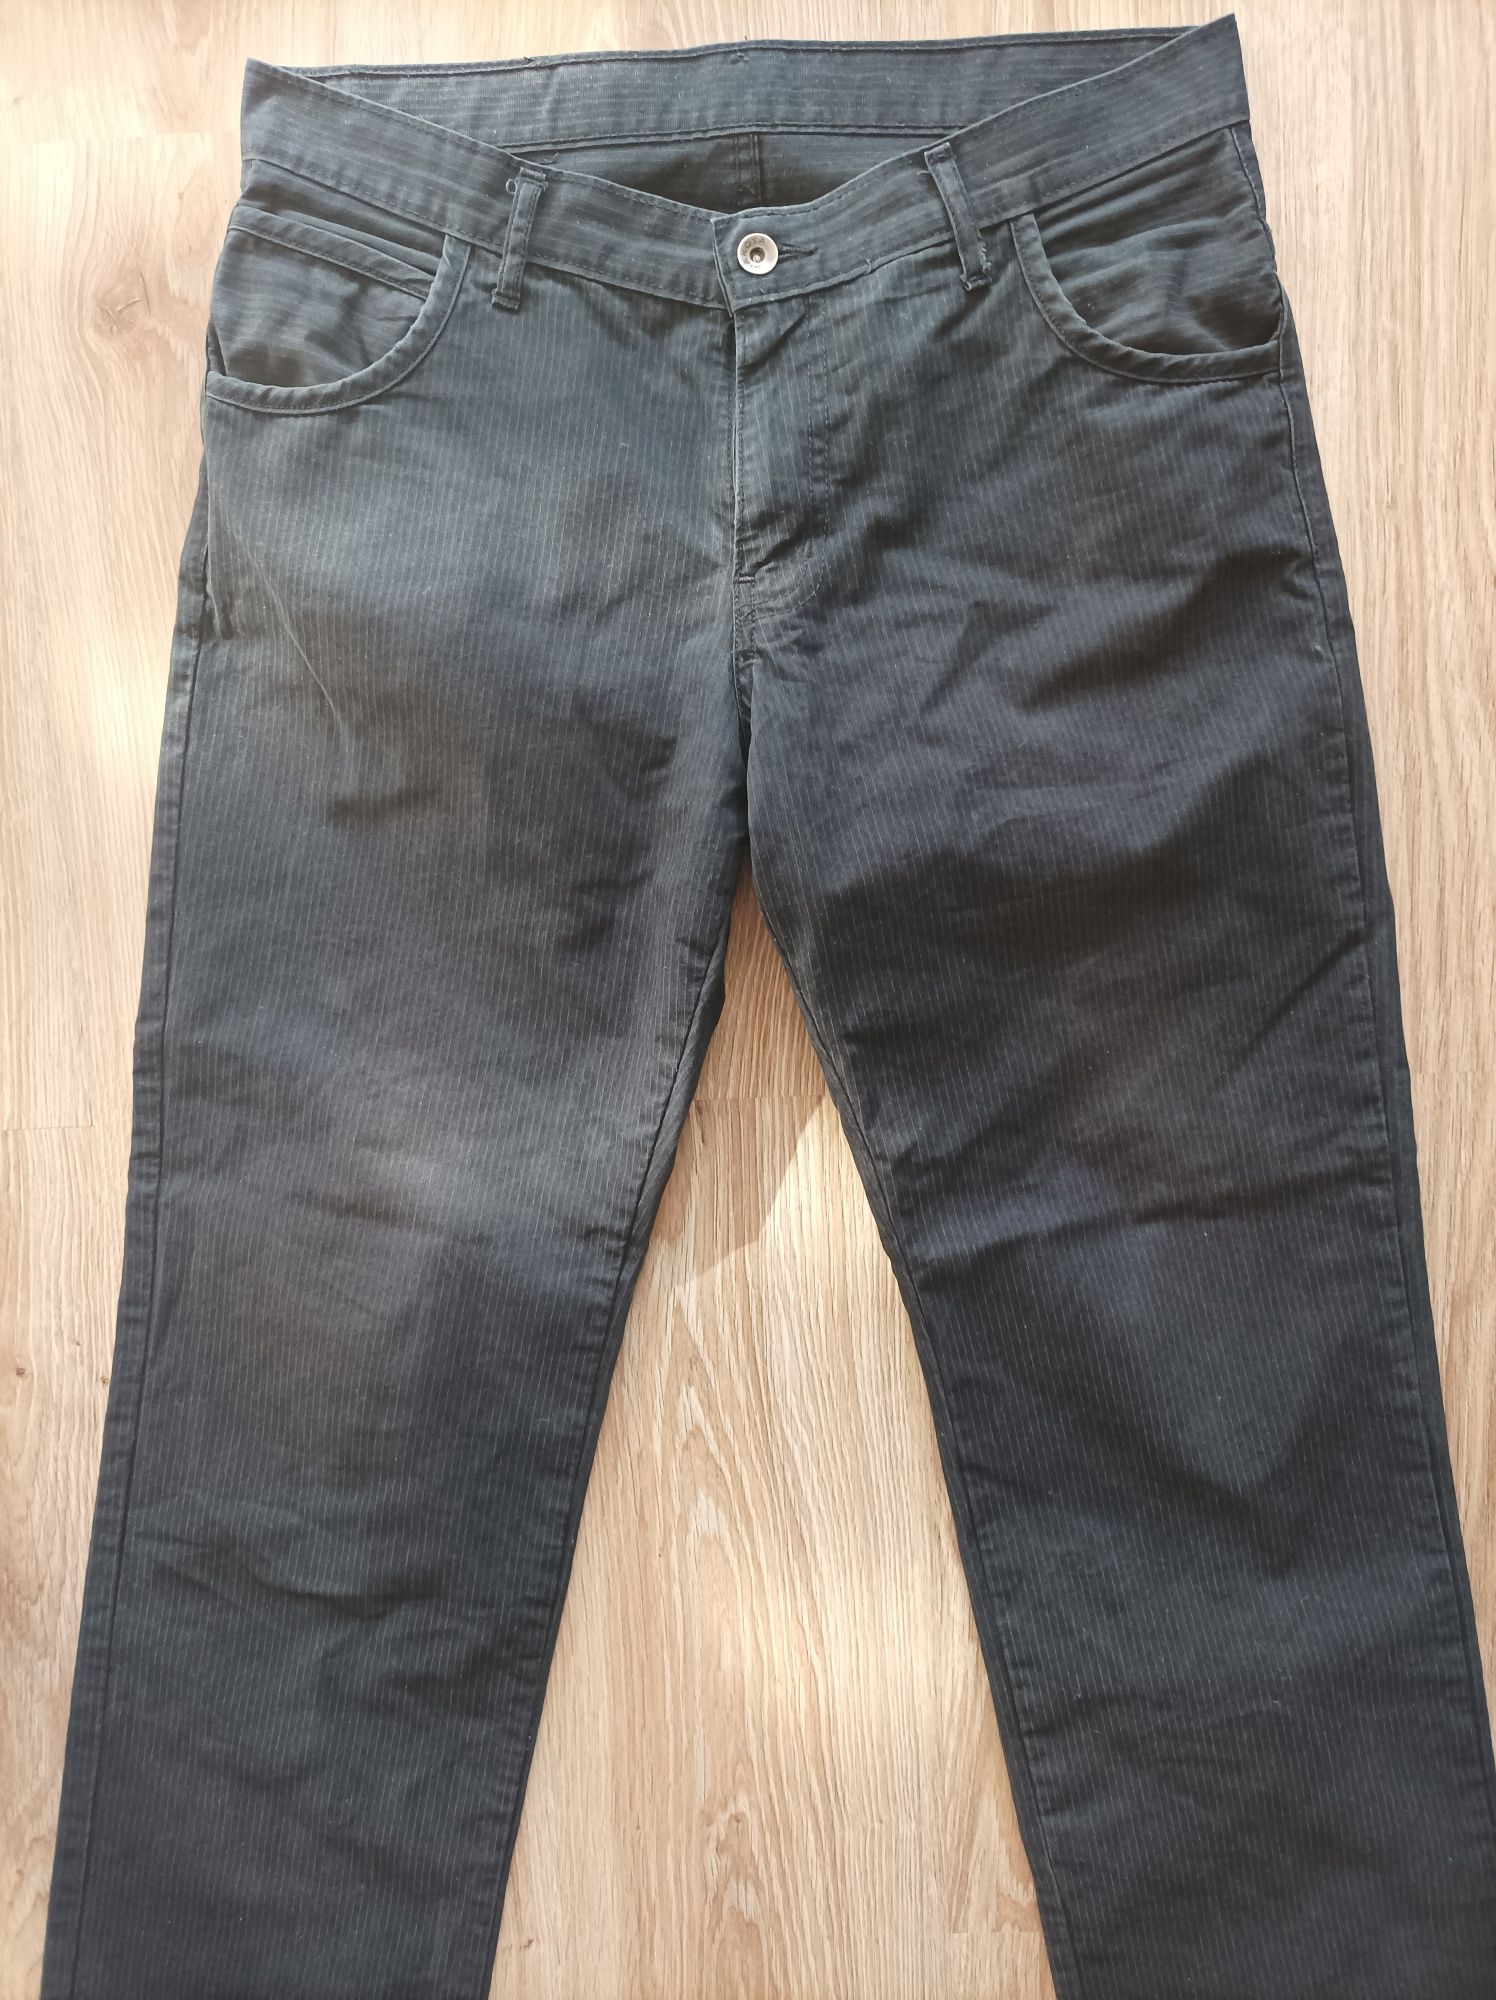 Spodnie męskie ciemny jeans dakota